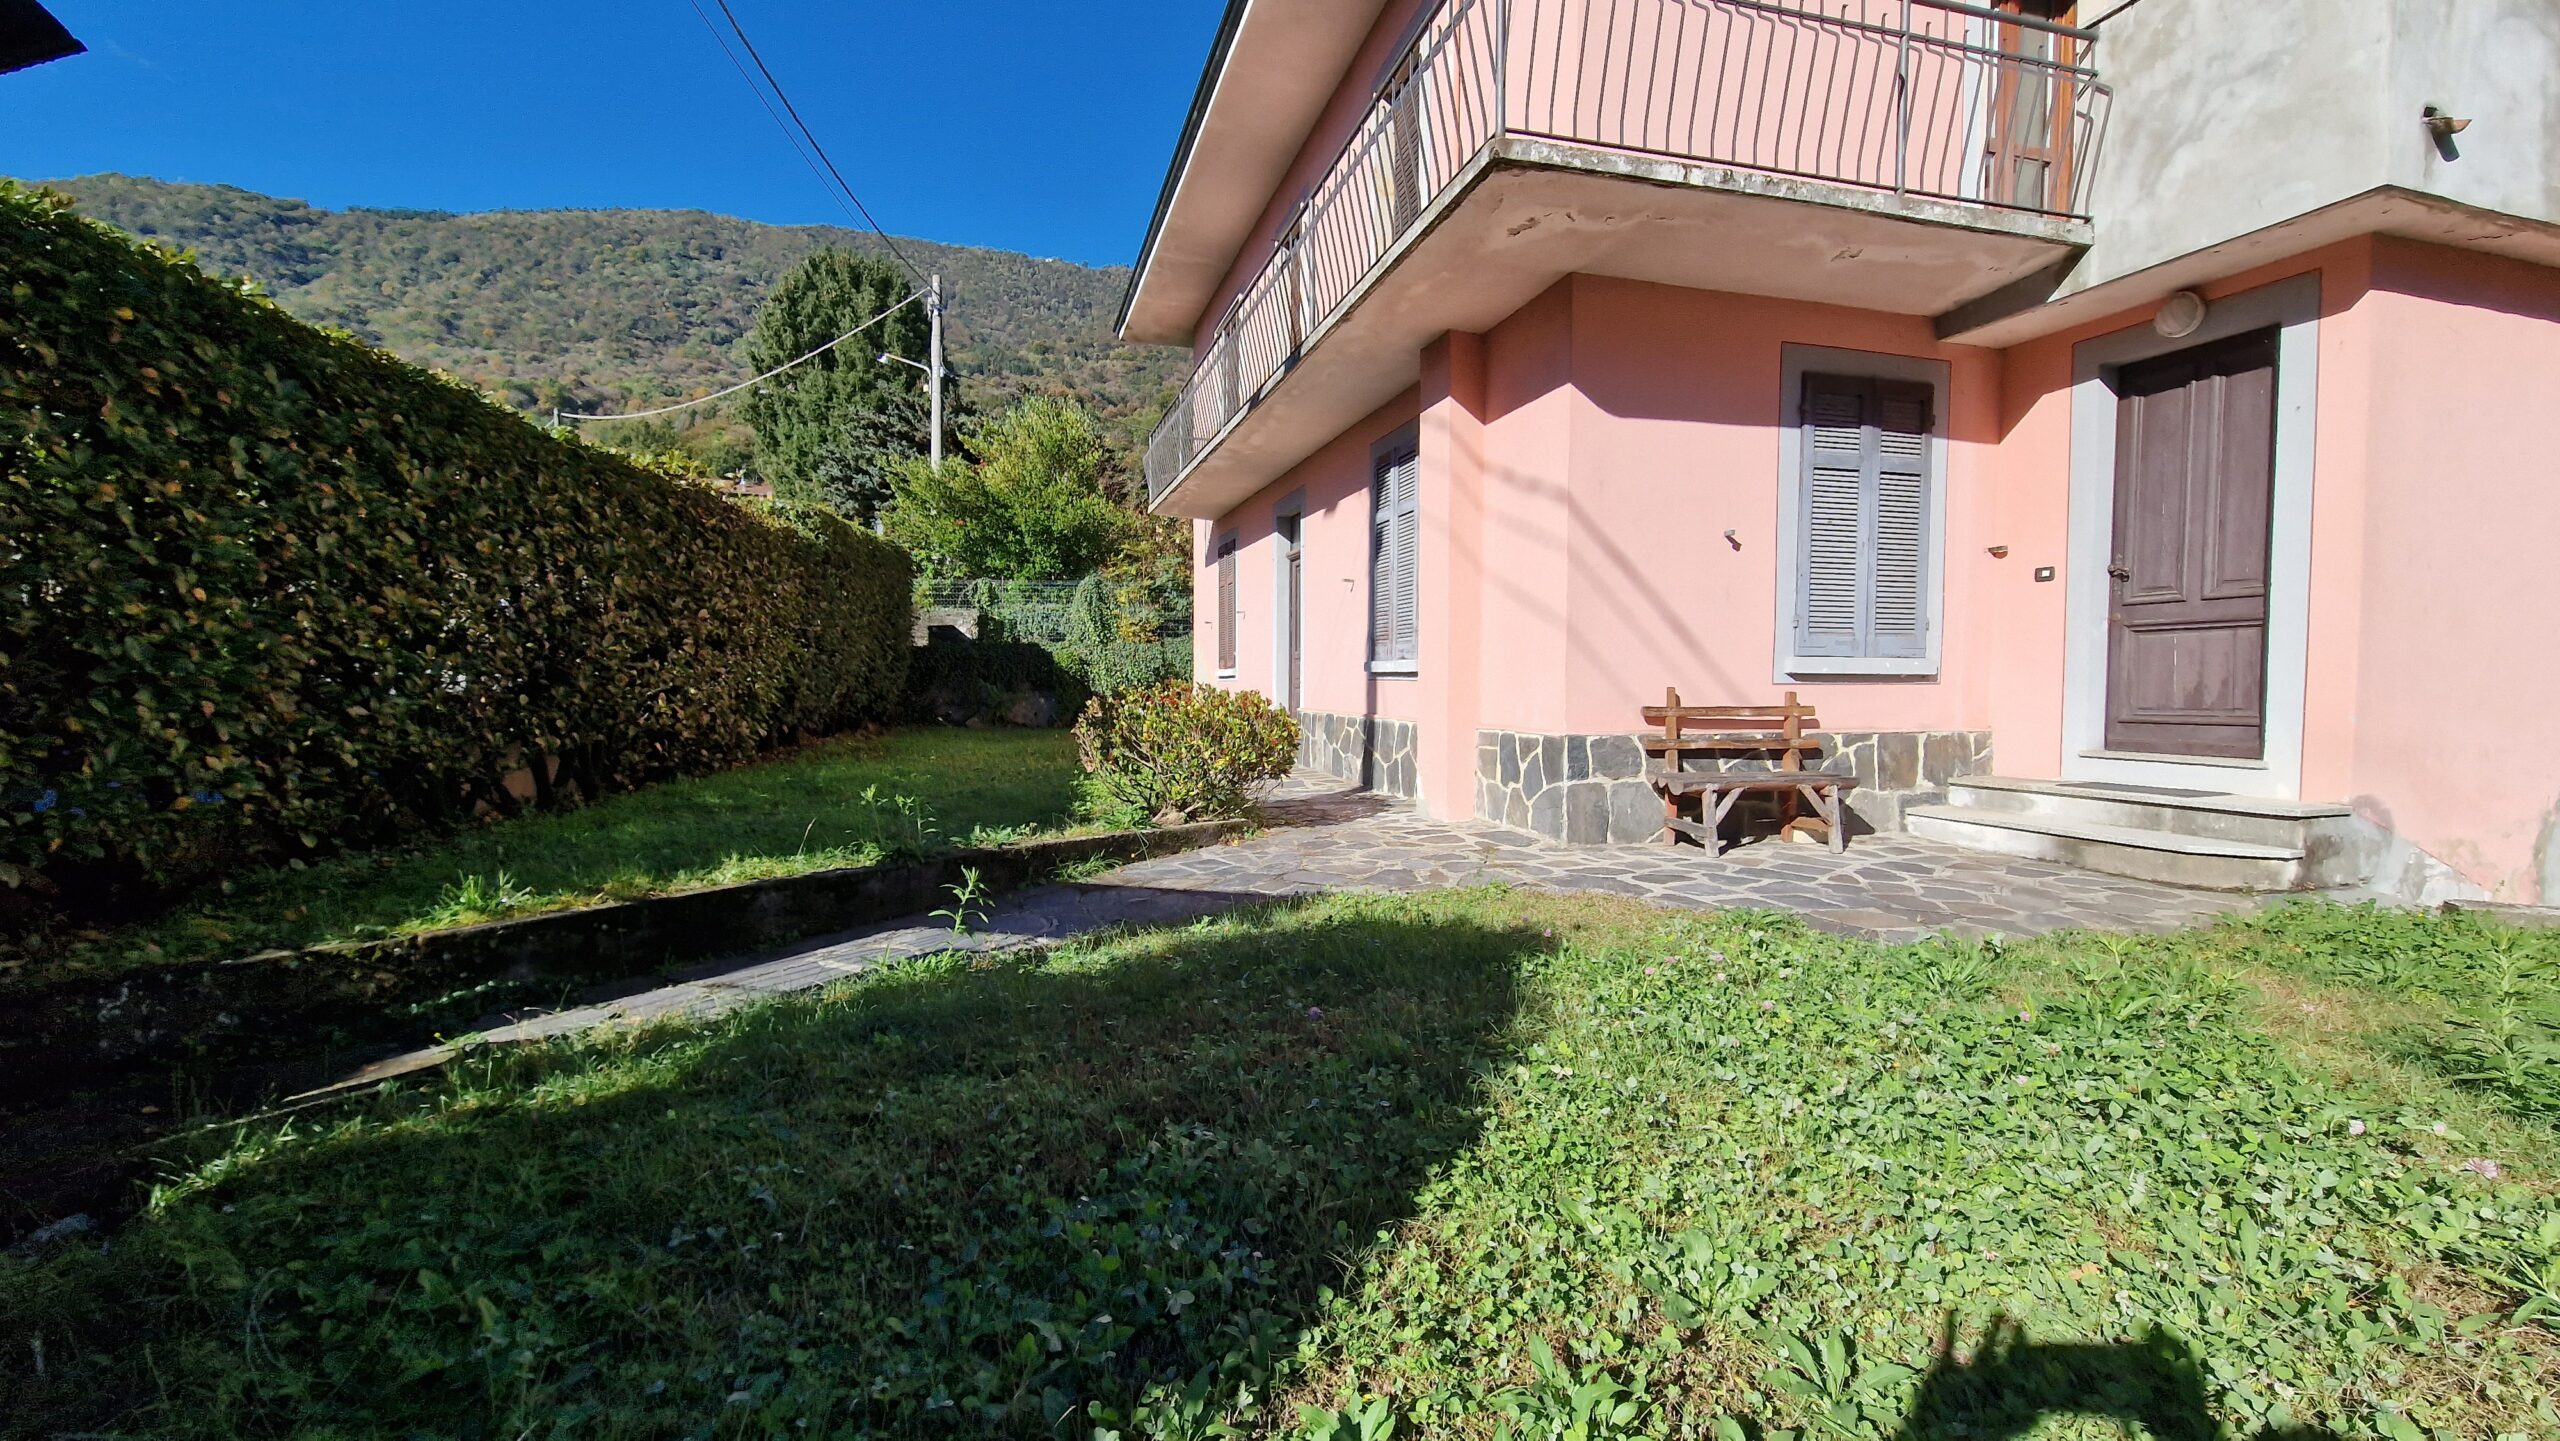 Anteprima foto Casa bifamiliare di ampia metratura con giardino, Casale Corte Cerro